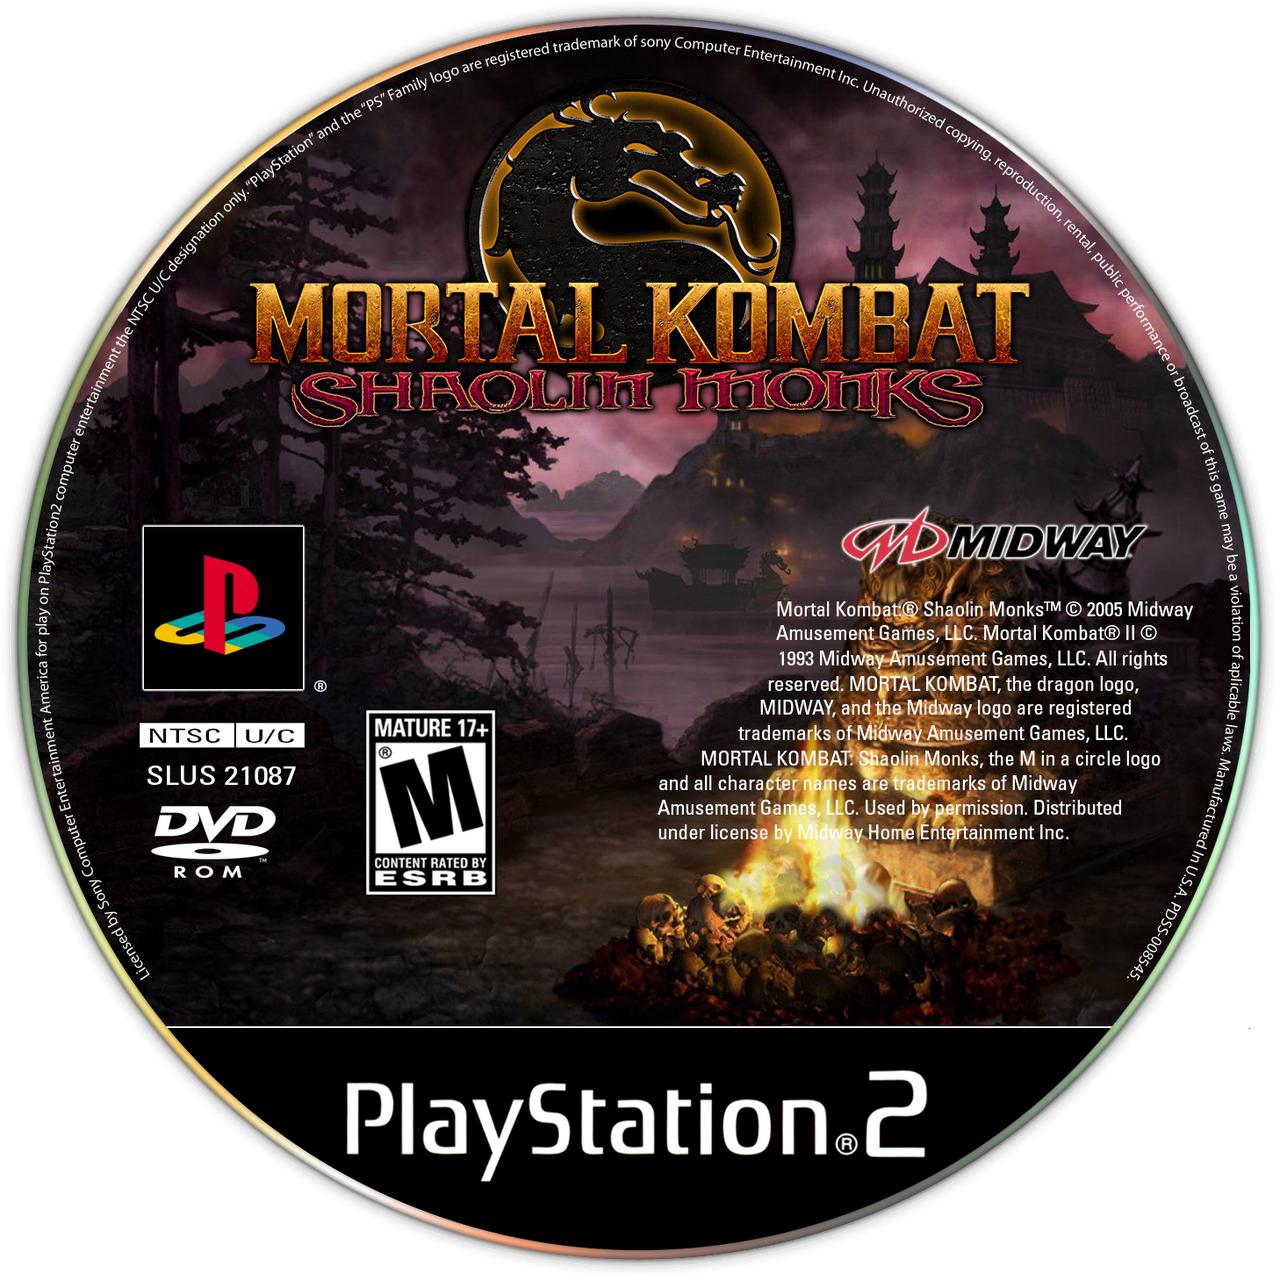 Mortal Kombat Shaolin Monks Playstation 2 Glossy Promo Ad Poster Unframed  G1937